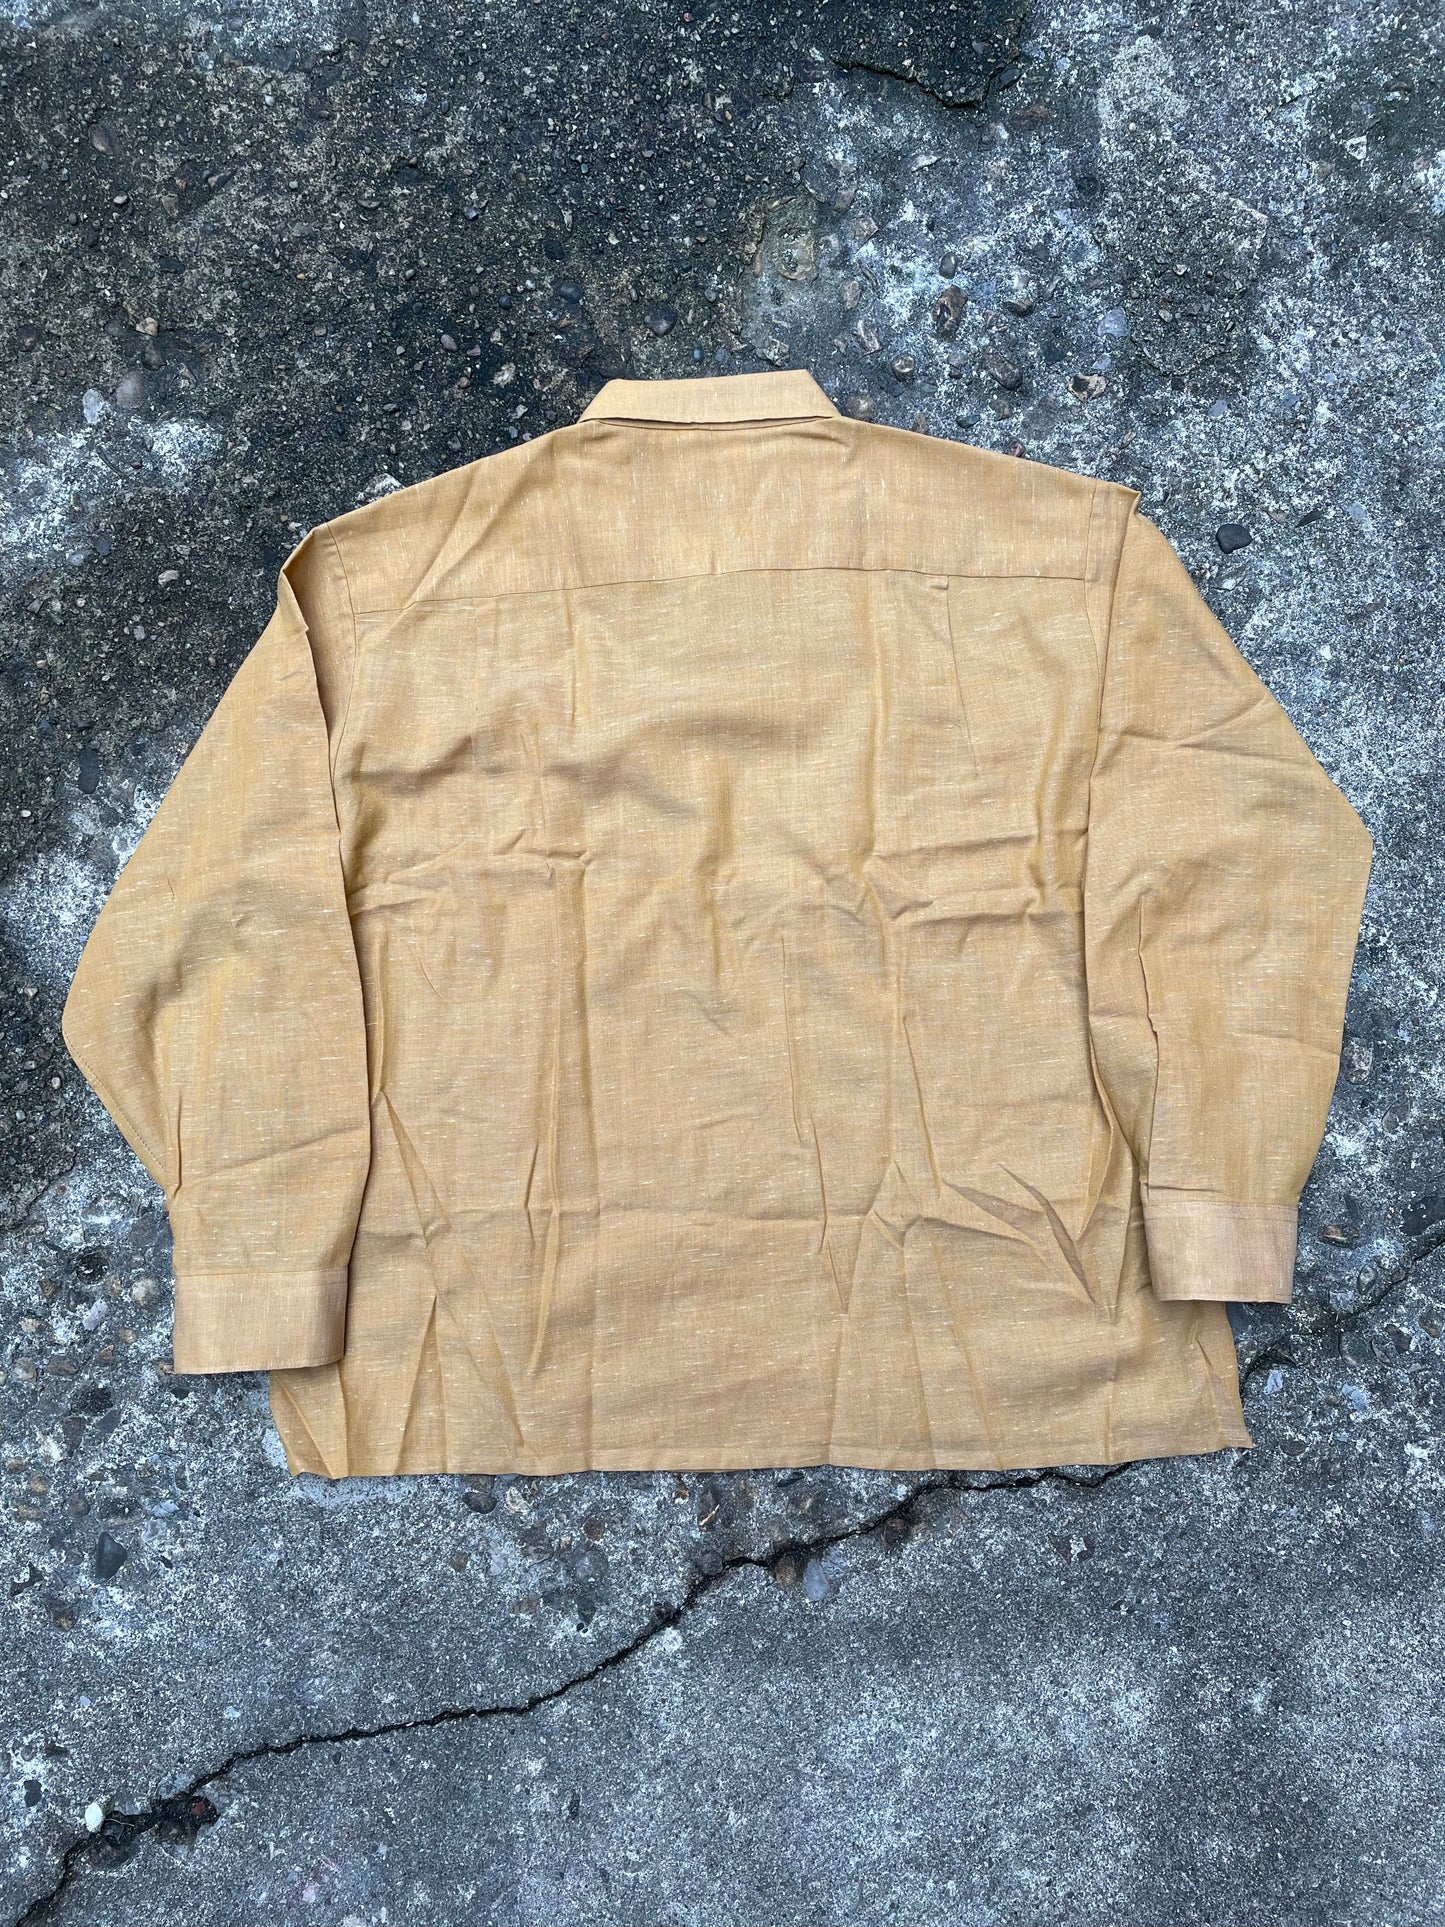 1960’s Mohawk Long Sleeve Button Up Shirt - XL